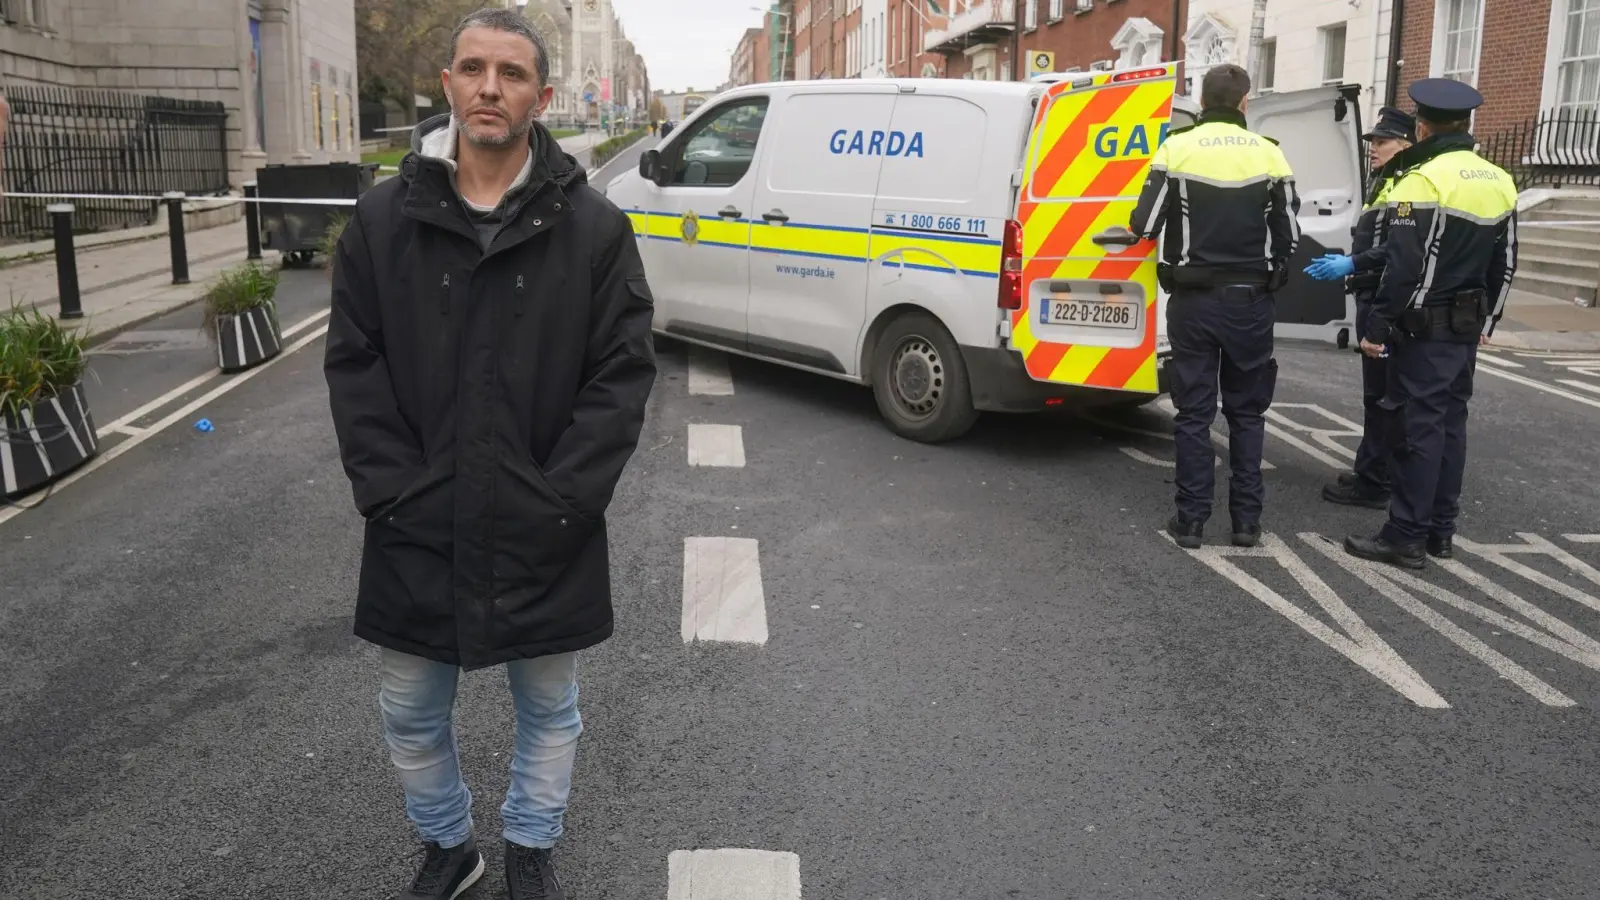 Caio Benicio, ein Deliveroo-Fahrer, schlug mit seinem Helm auf einen Messerangreifer in Dublin ein und verhinderte womöglich mehr Opfer. (Foto: Brian Lawless/PA Wire/dpa)